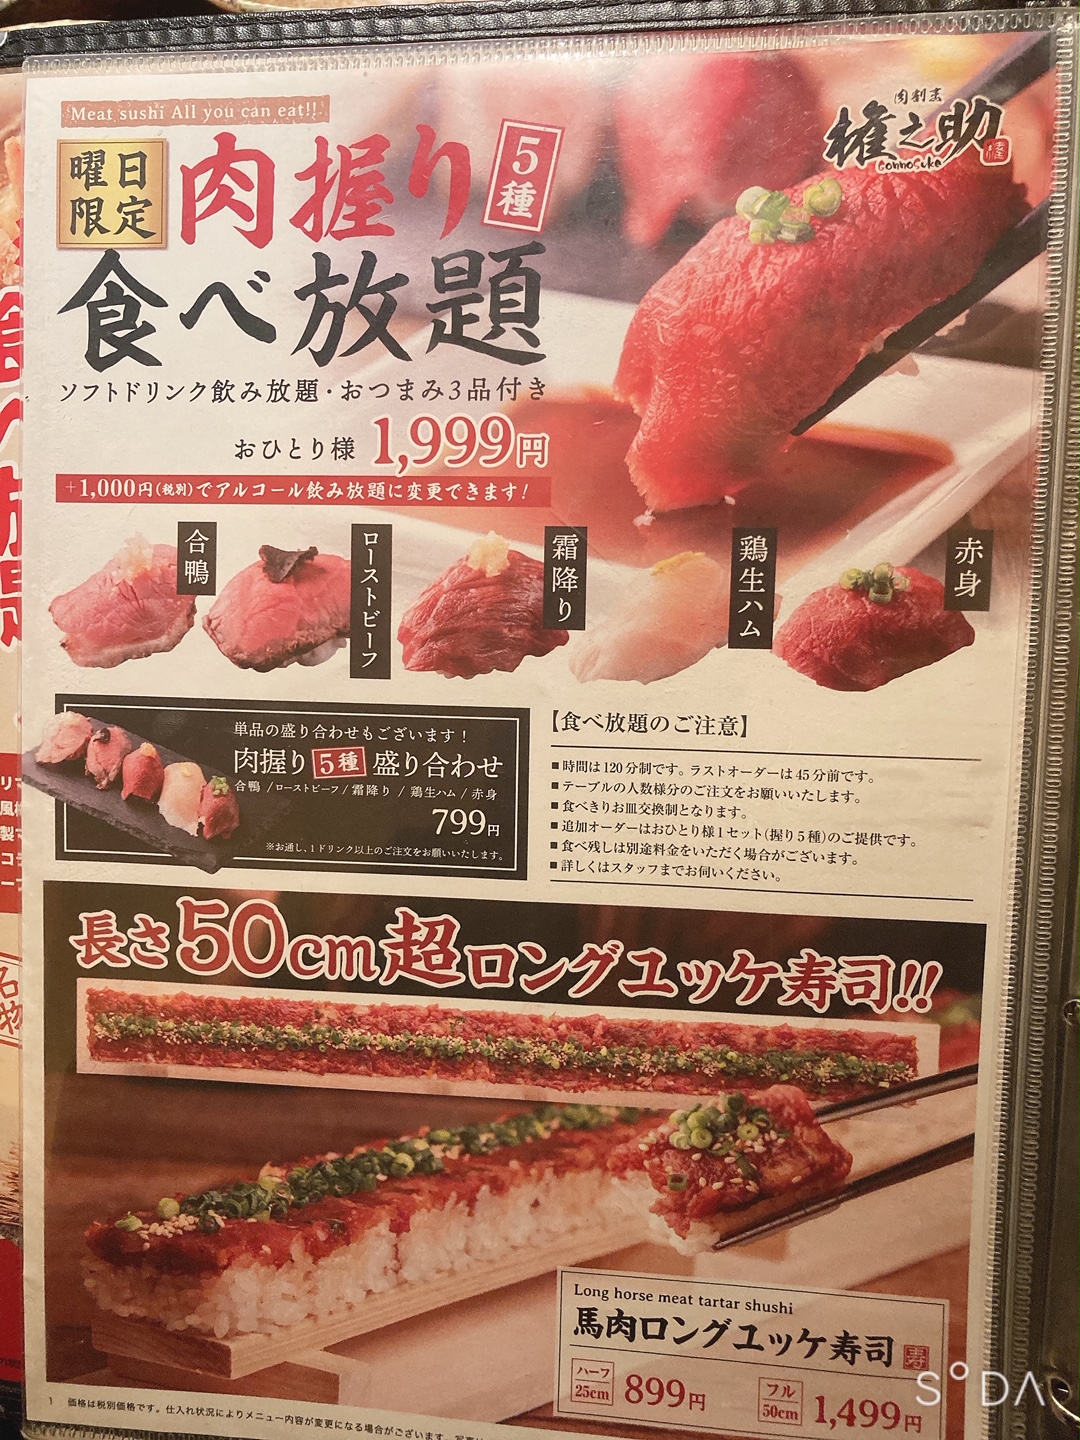 横浜 肉の権之助 食べ放題 00円で5種類の肉寿司が食べ放題 ソフトドリンク飲み放題付き たくの全国食べ放題 カフェ巡り